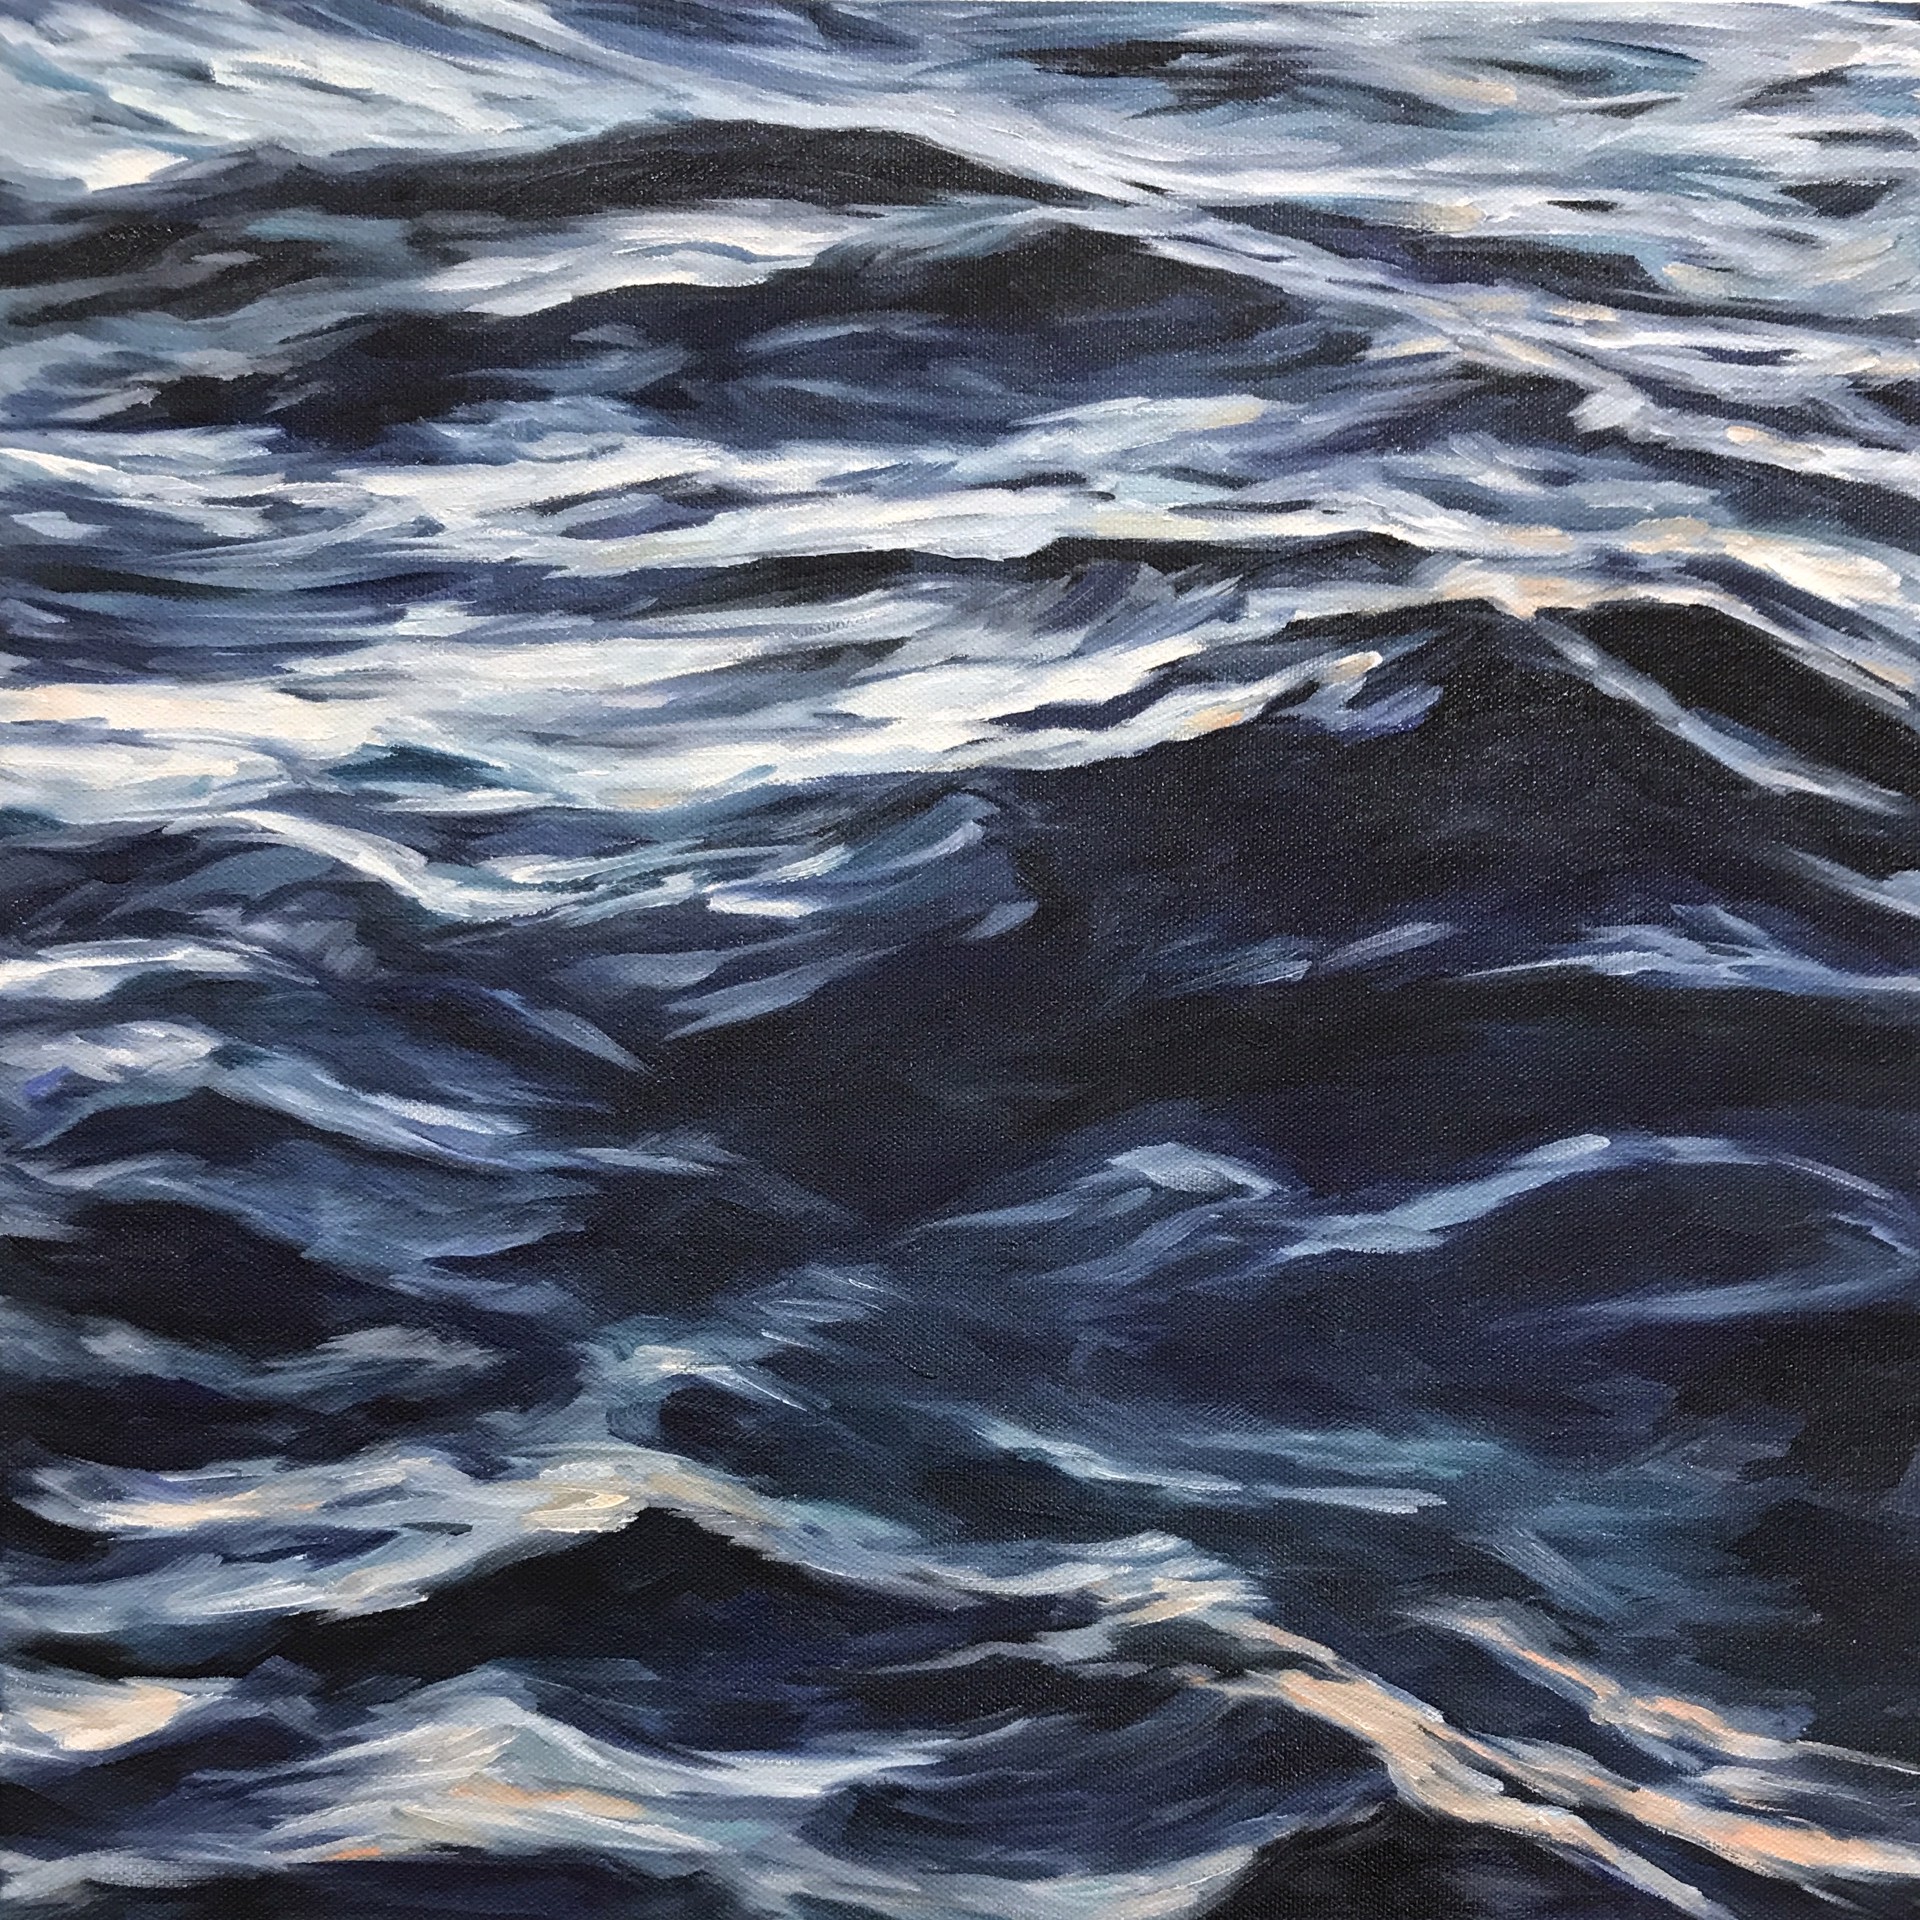 Lahaina Waves 10 by Valerie Eickmeier